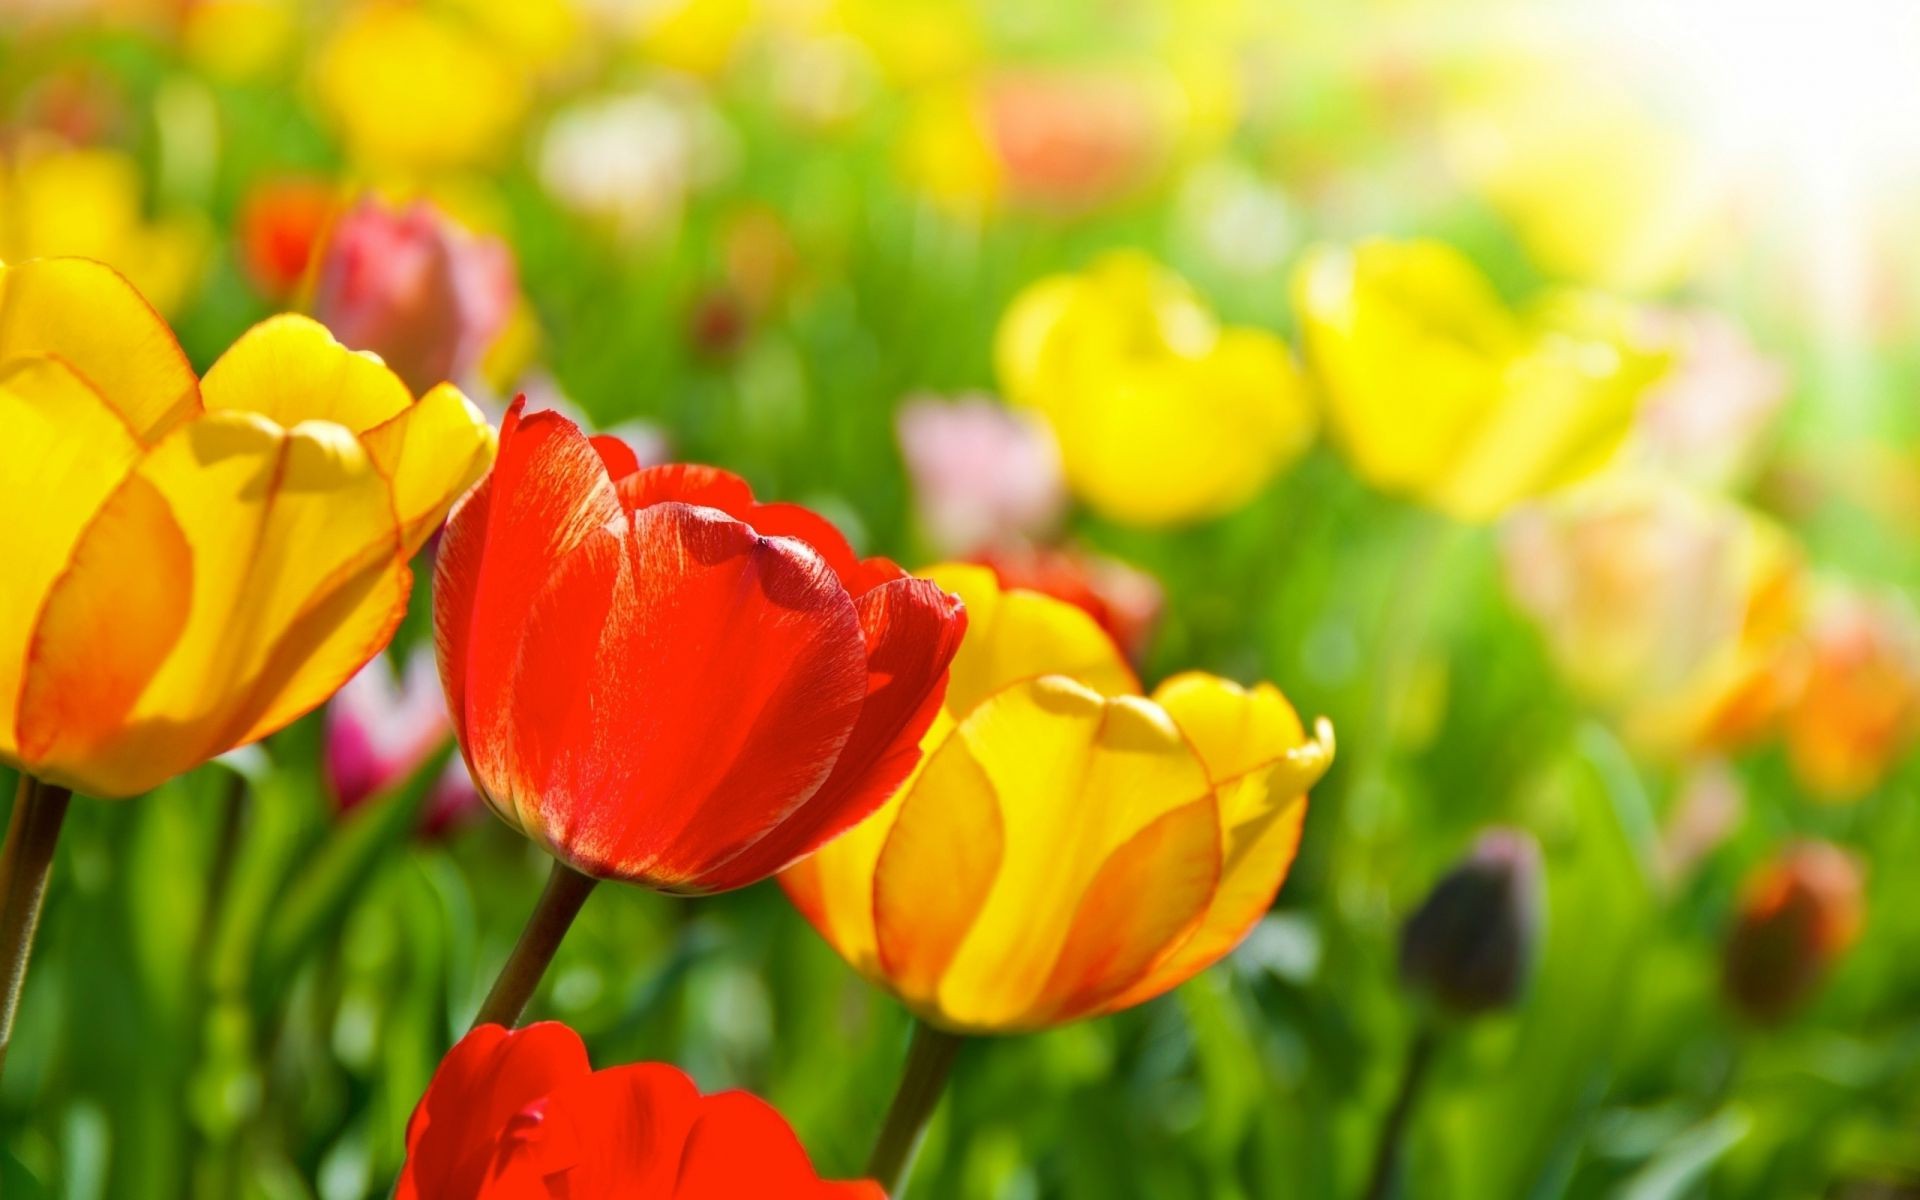 тюльпаны тюльпан природа сад пасха лист цветок флора поле лето яркий цветочные цвет сезон хорошую погоду рост яркие блюминг трава лепесток